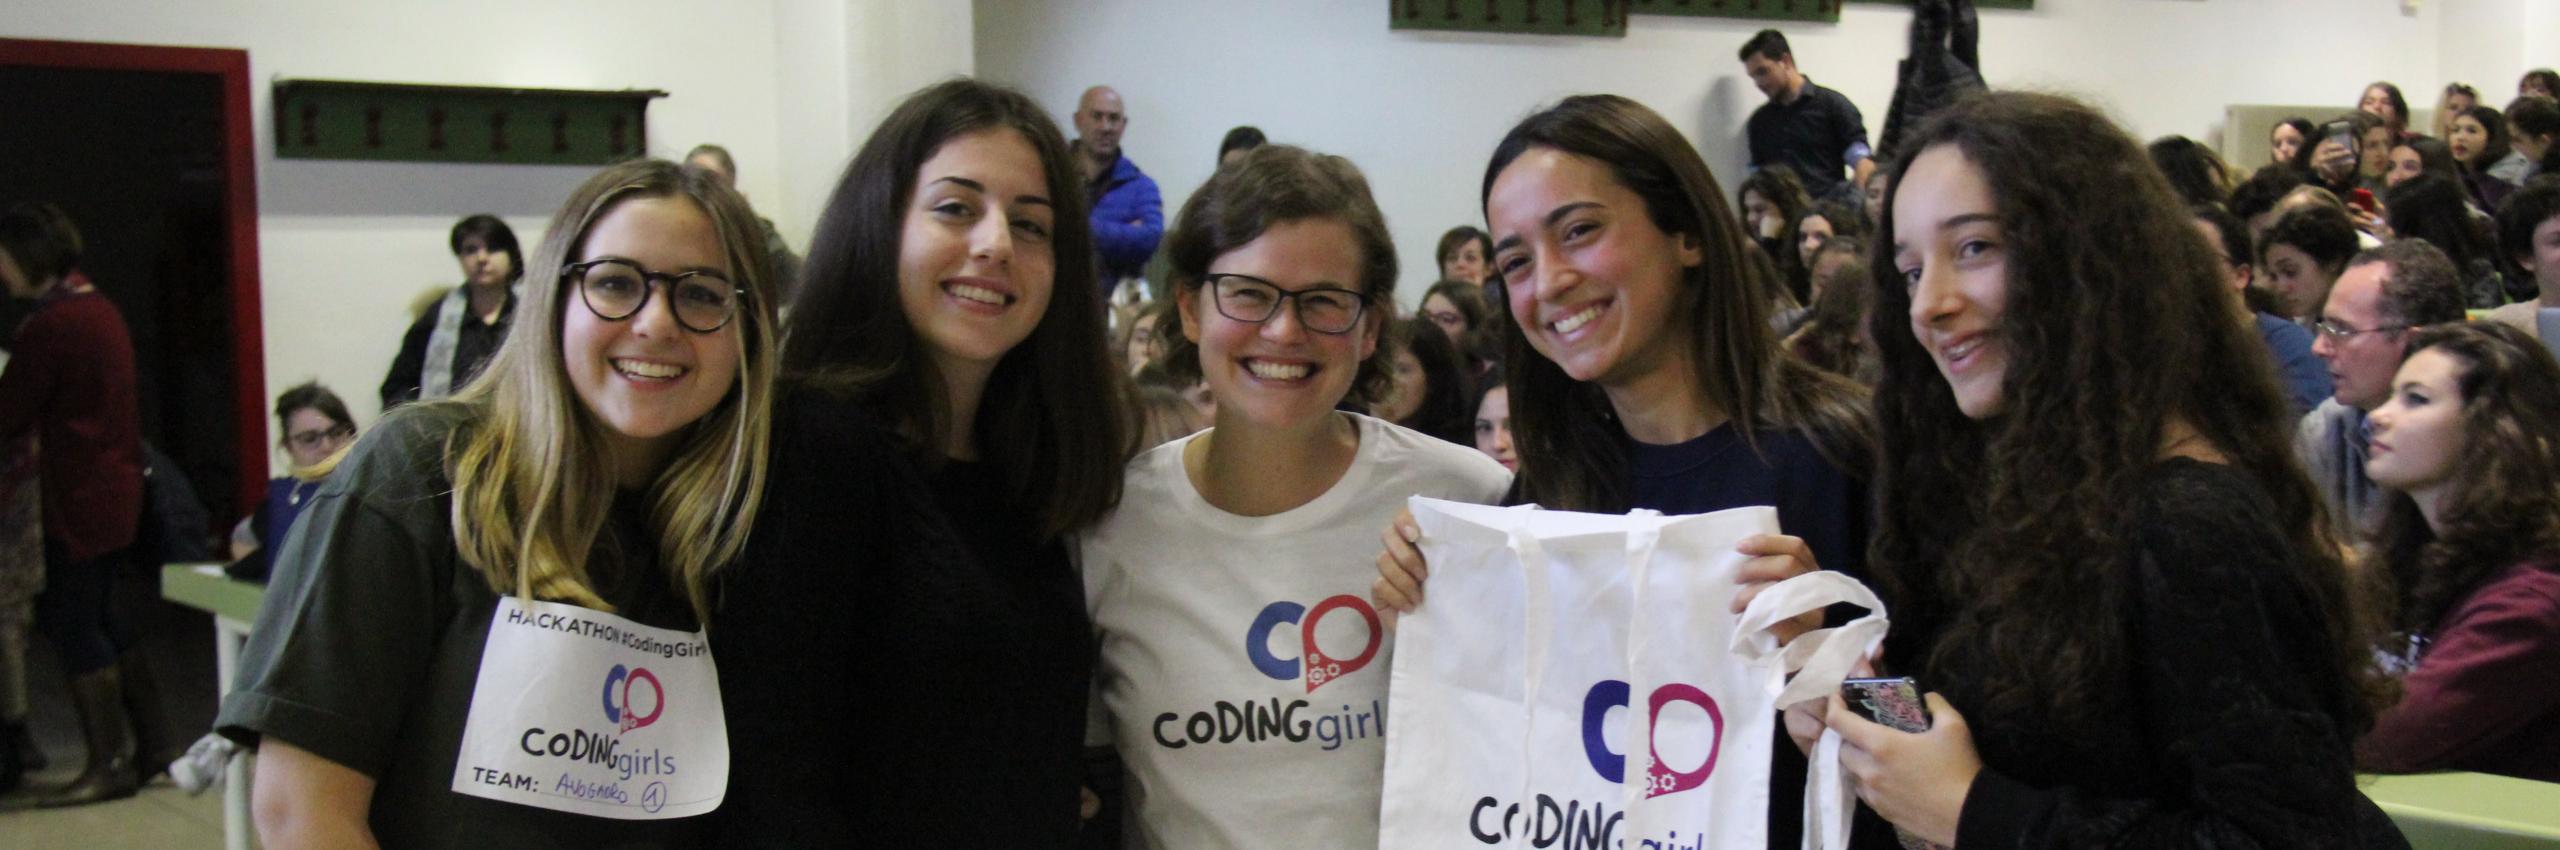 Hacakathon Coding Girls al Campus Bio Medico di Roma